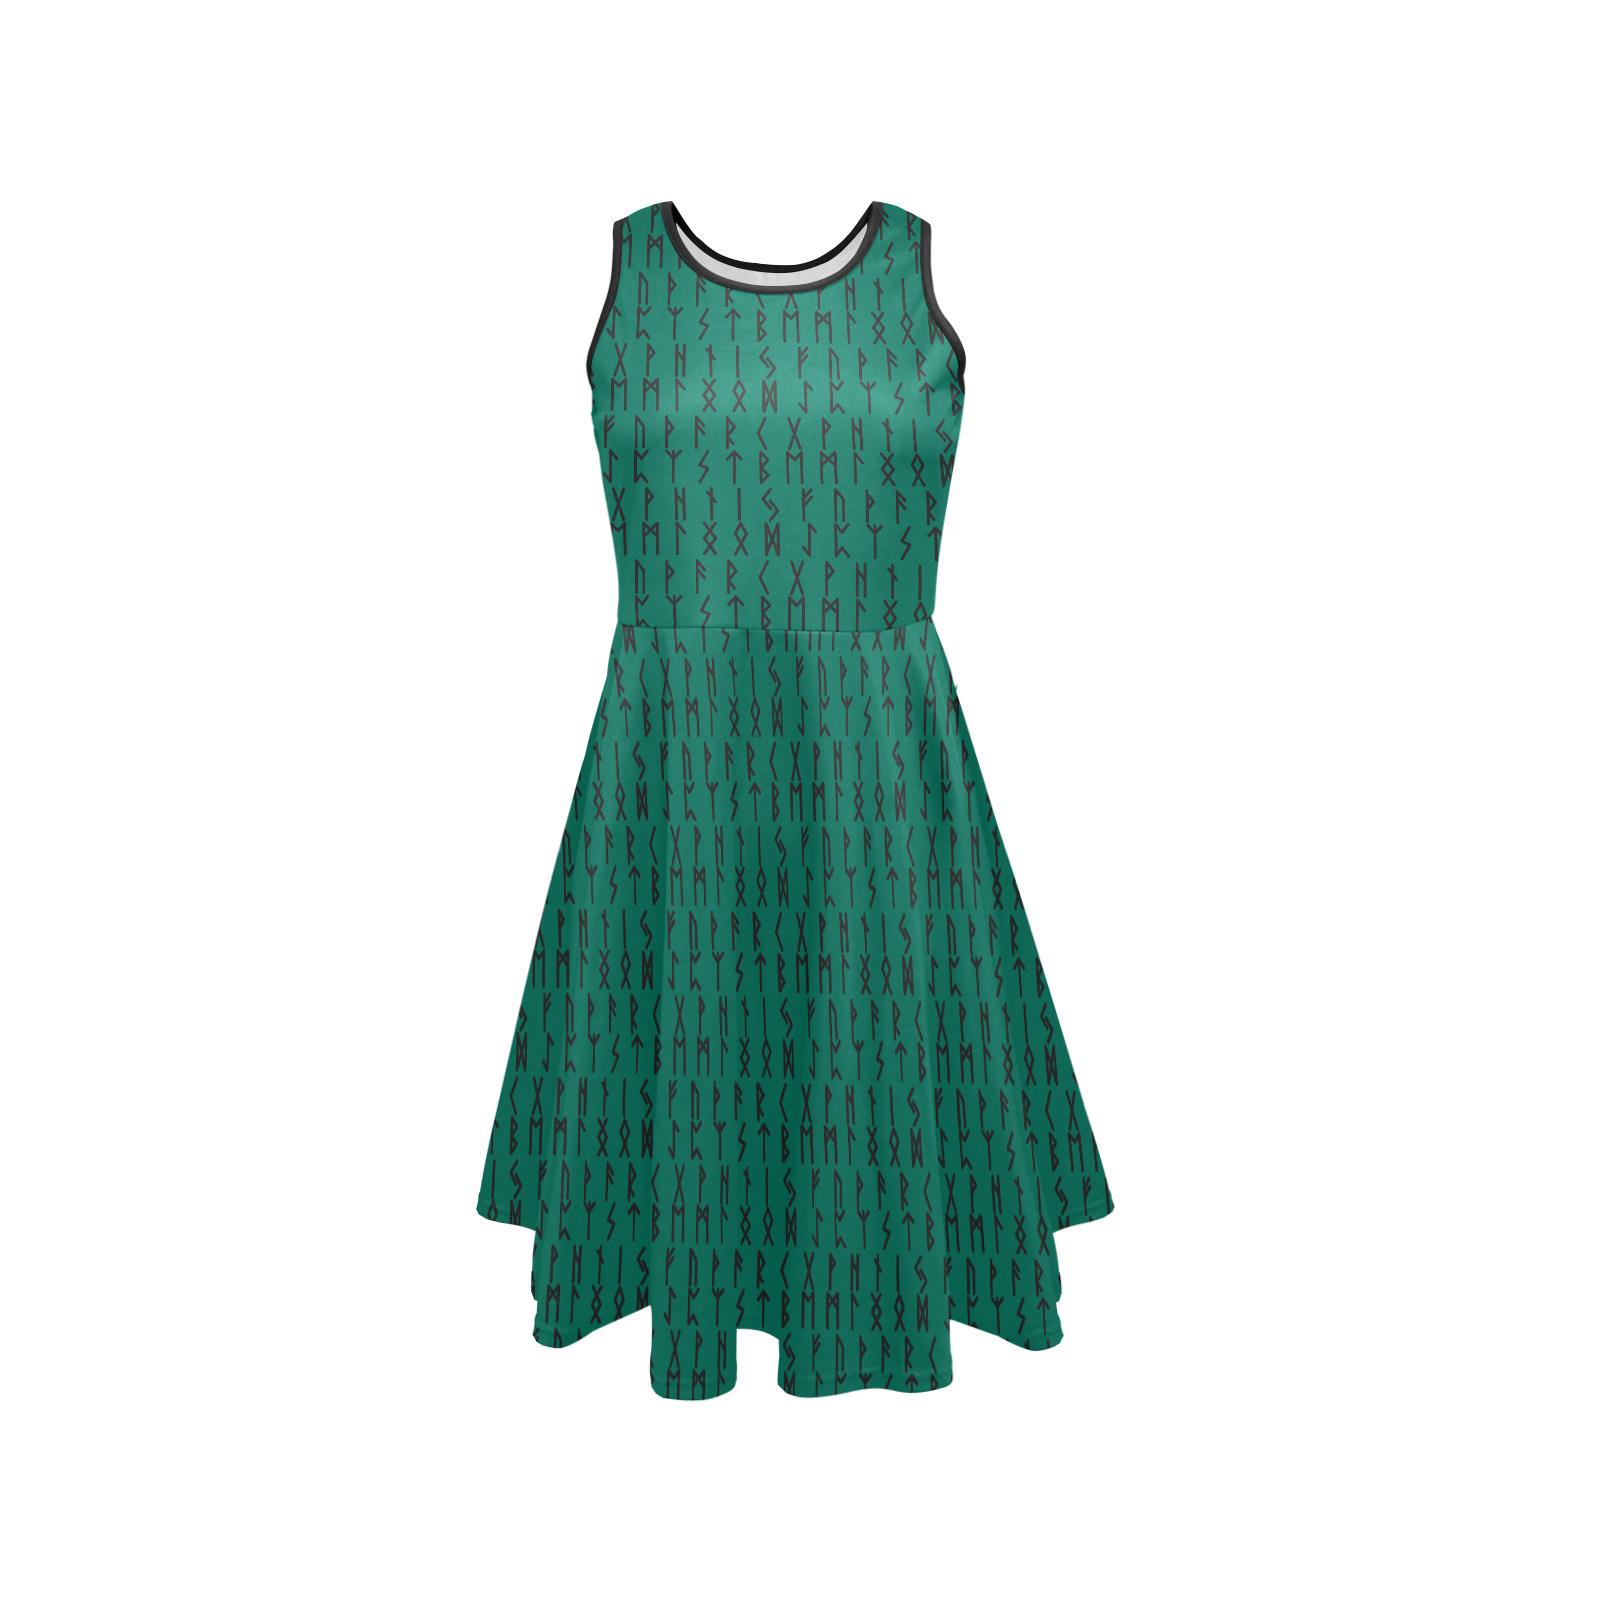 RUNE CASTING Green Sleeveless Expansion Dress (Model D60)